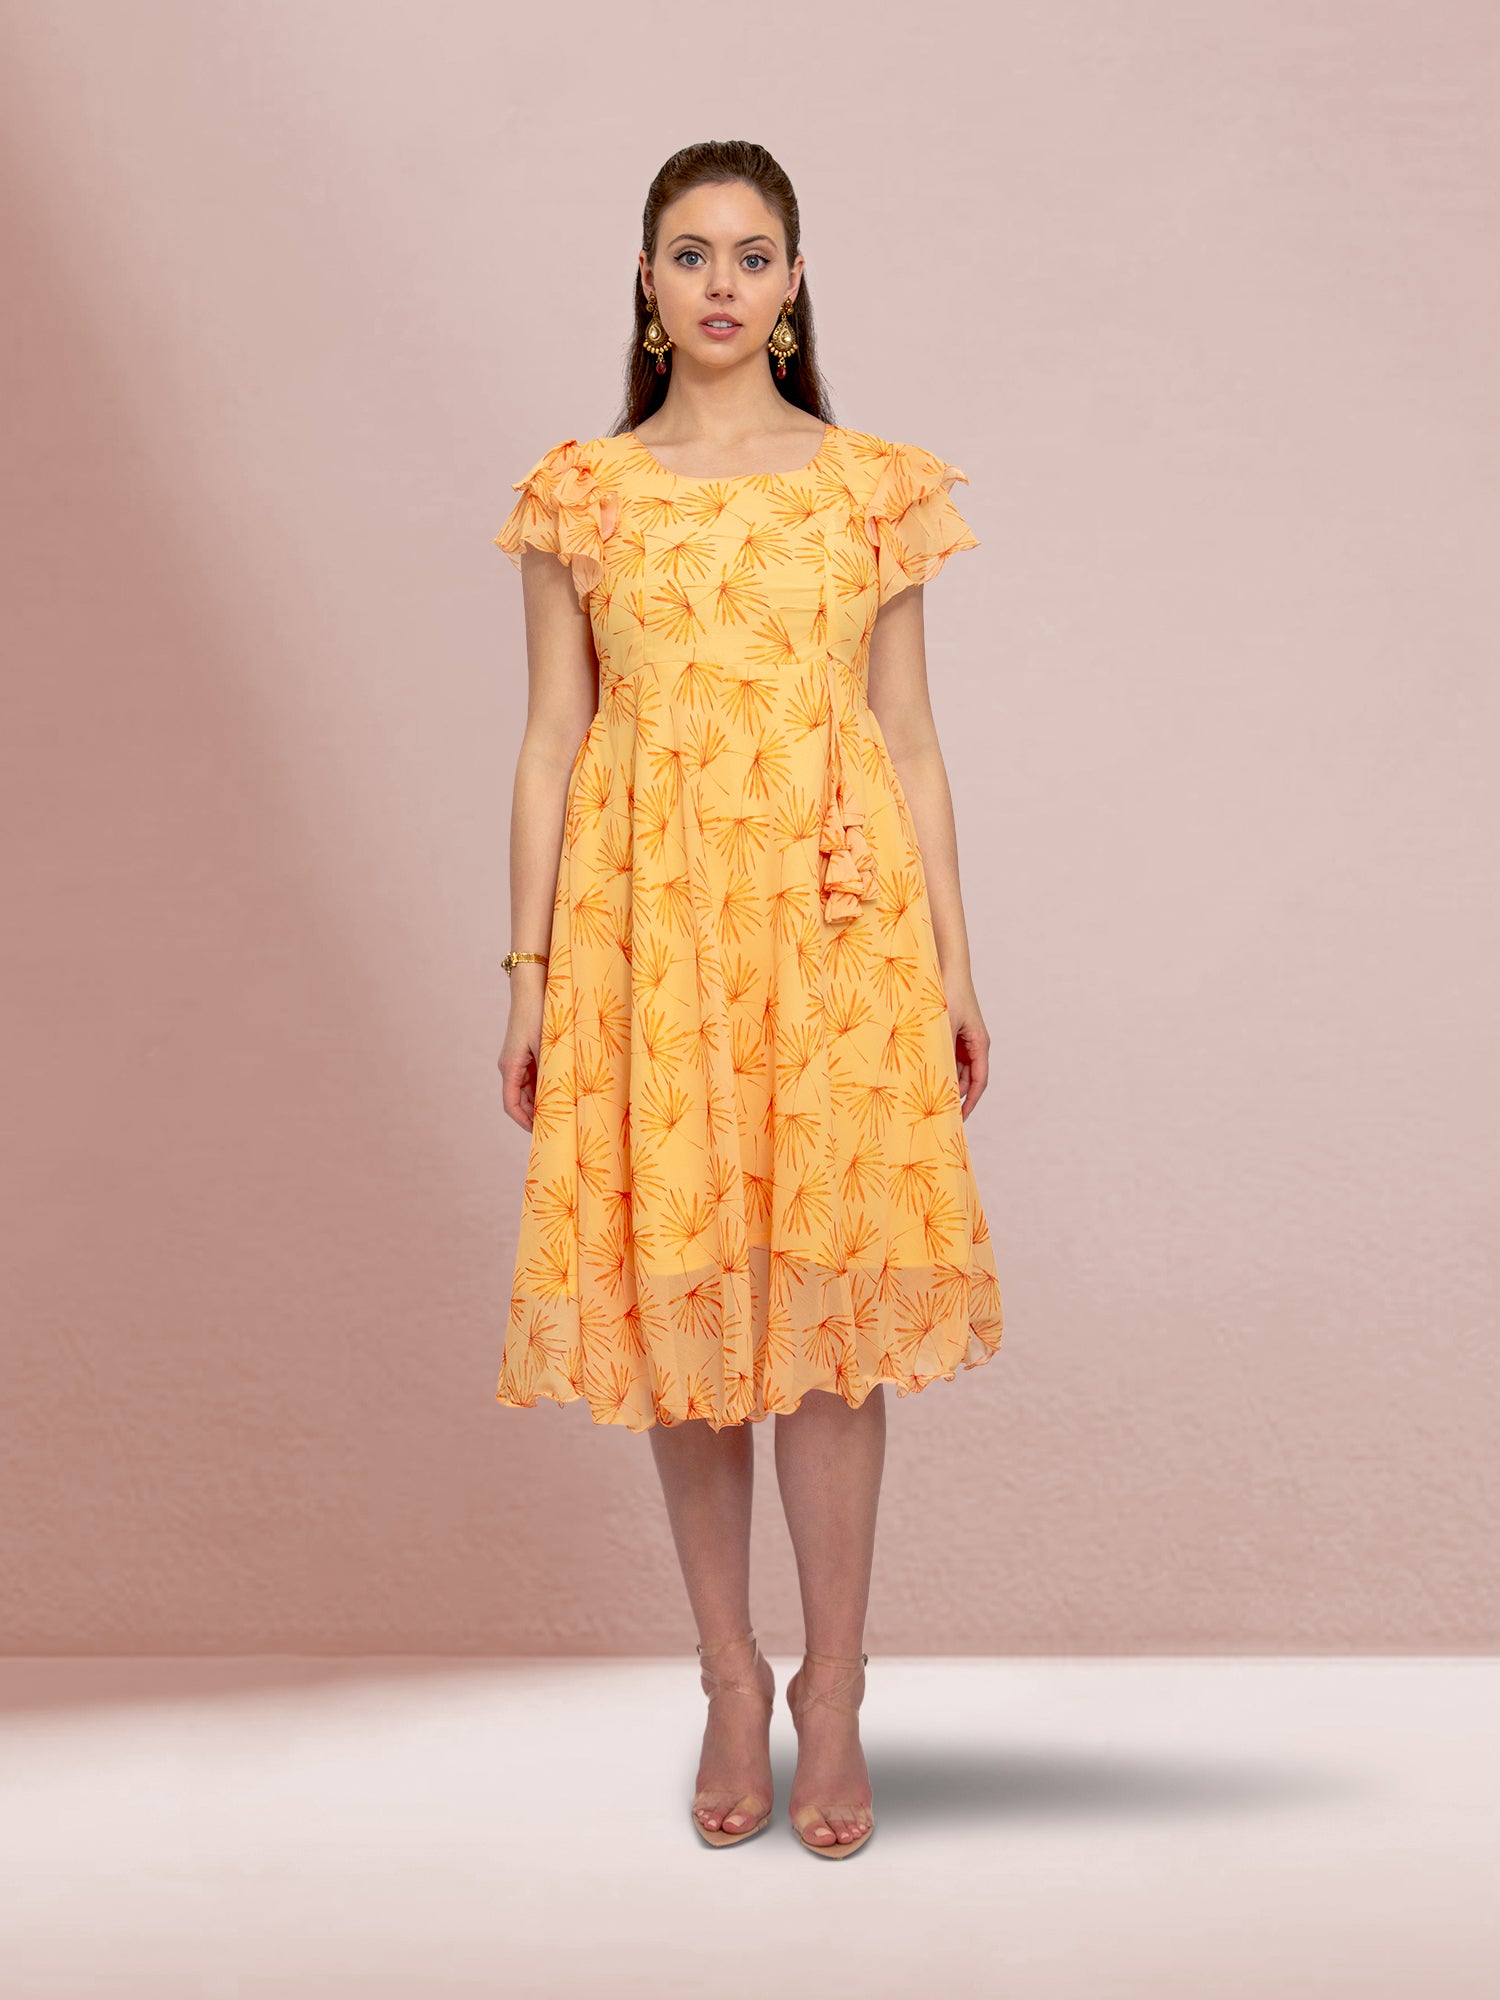 Harmony Hues - Yellow Color Printed Dress